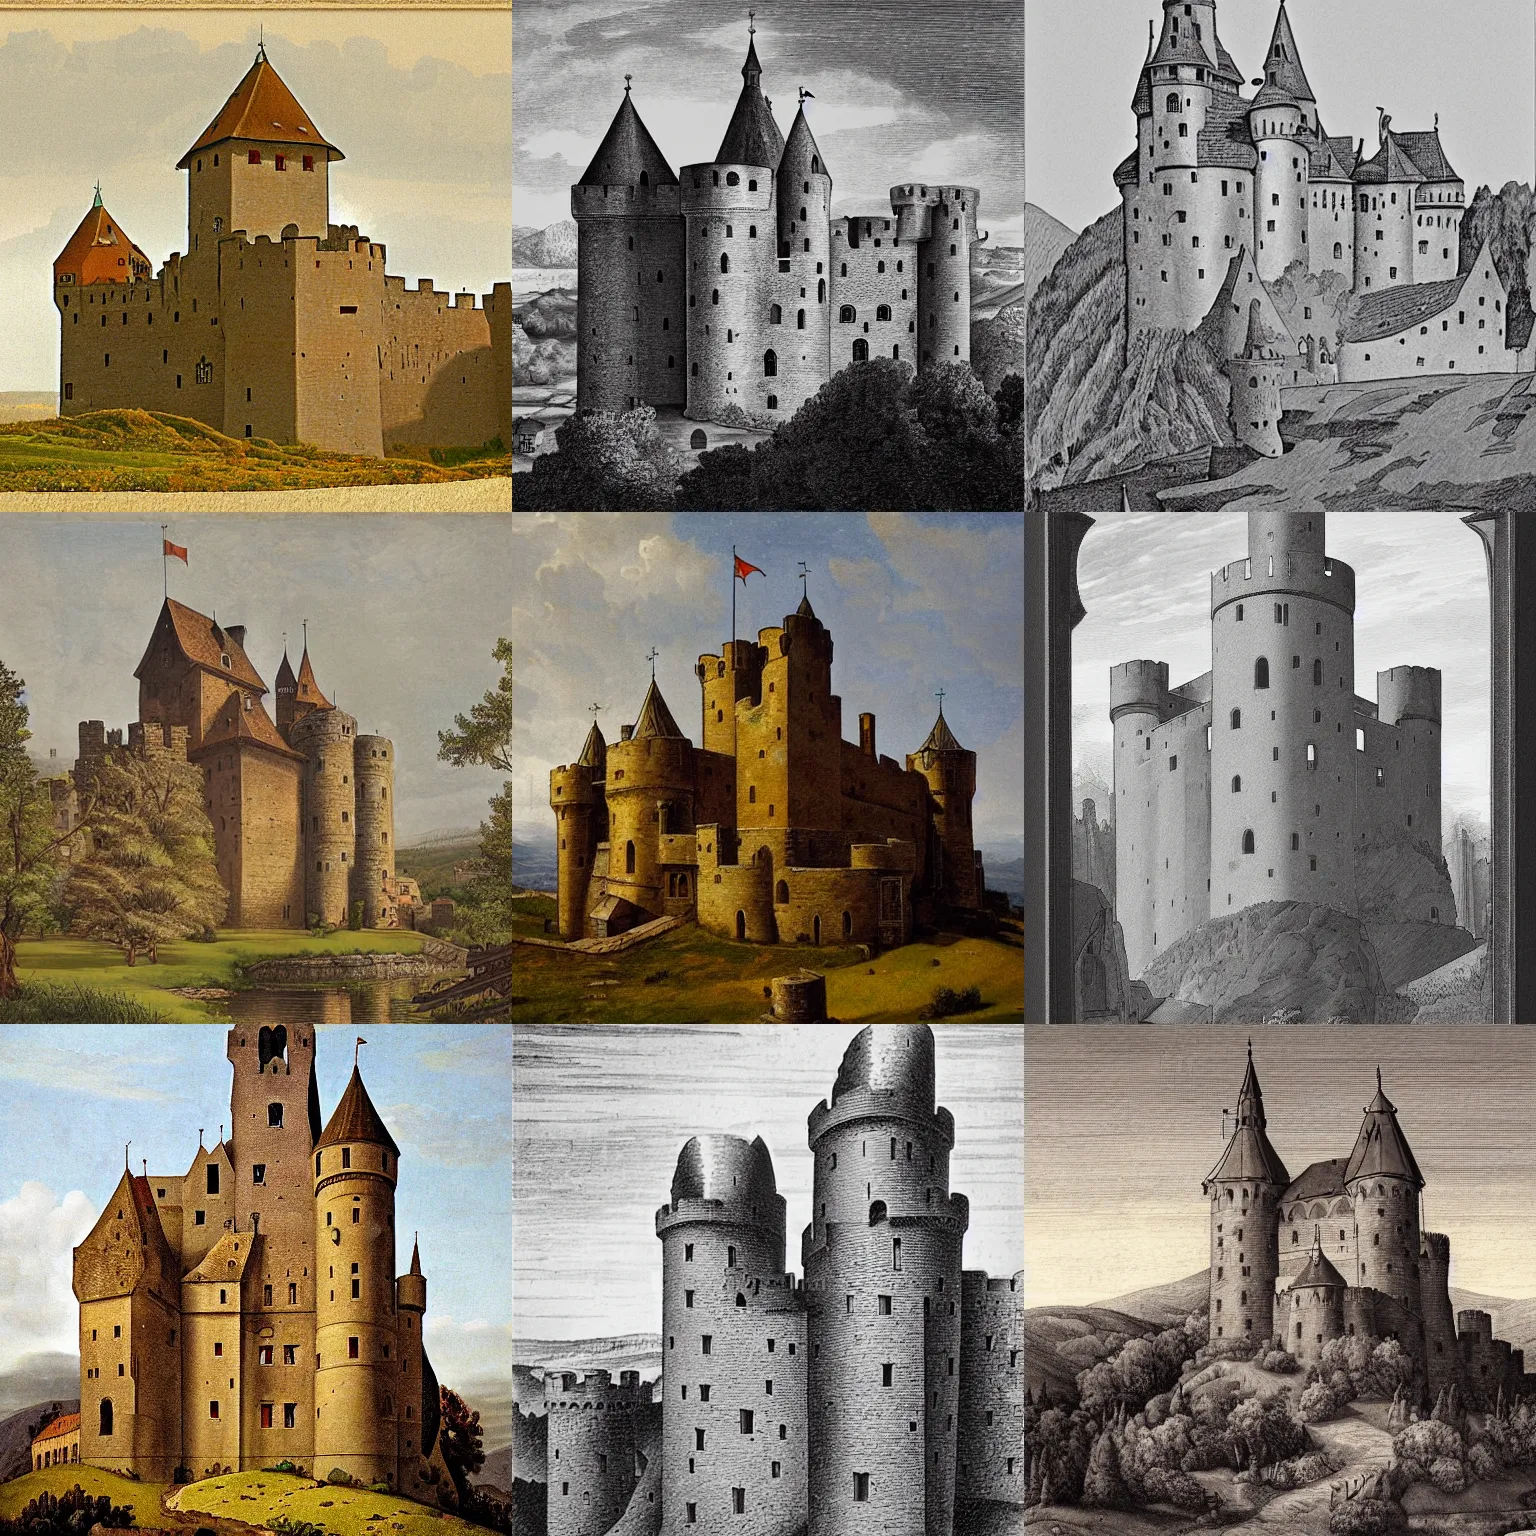 Prompt: medieval castle, by josef gassler